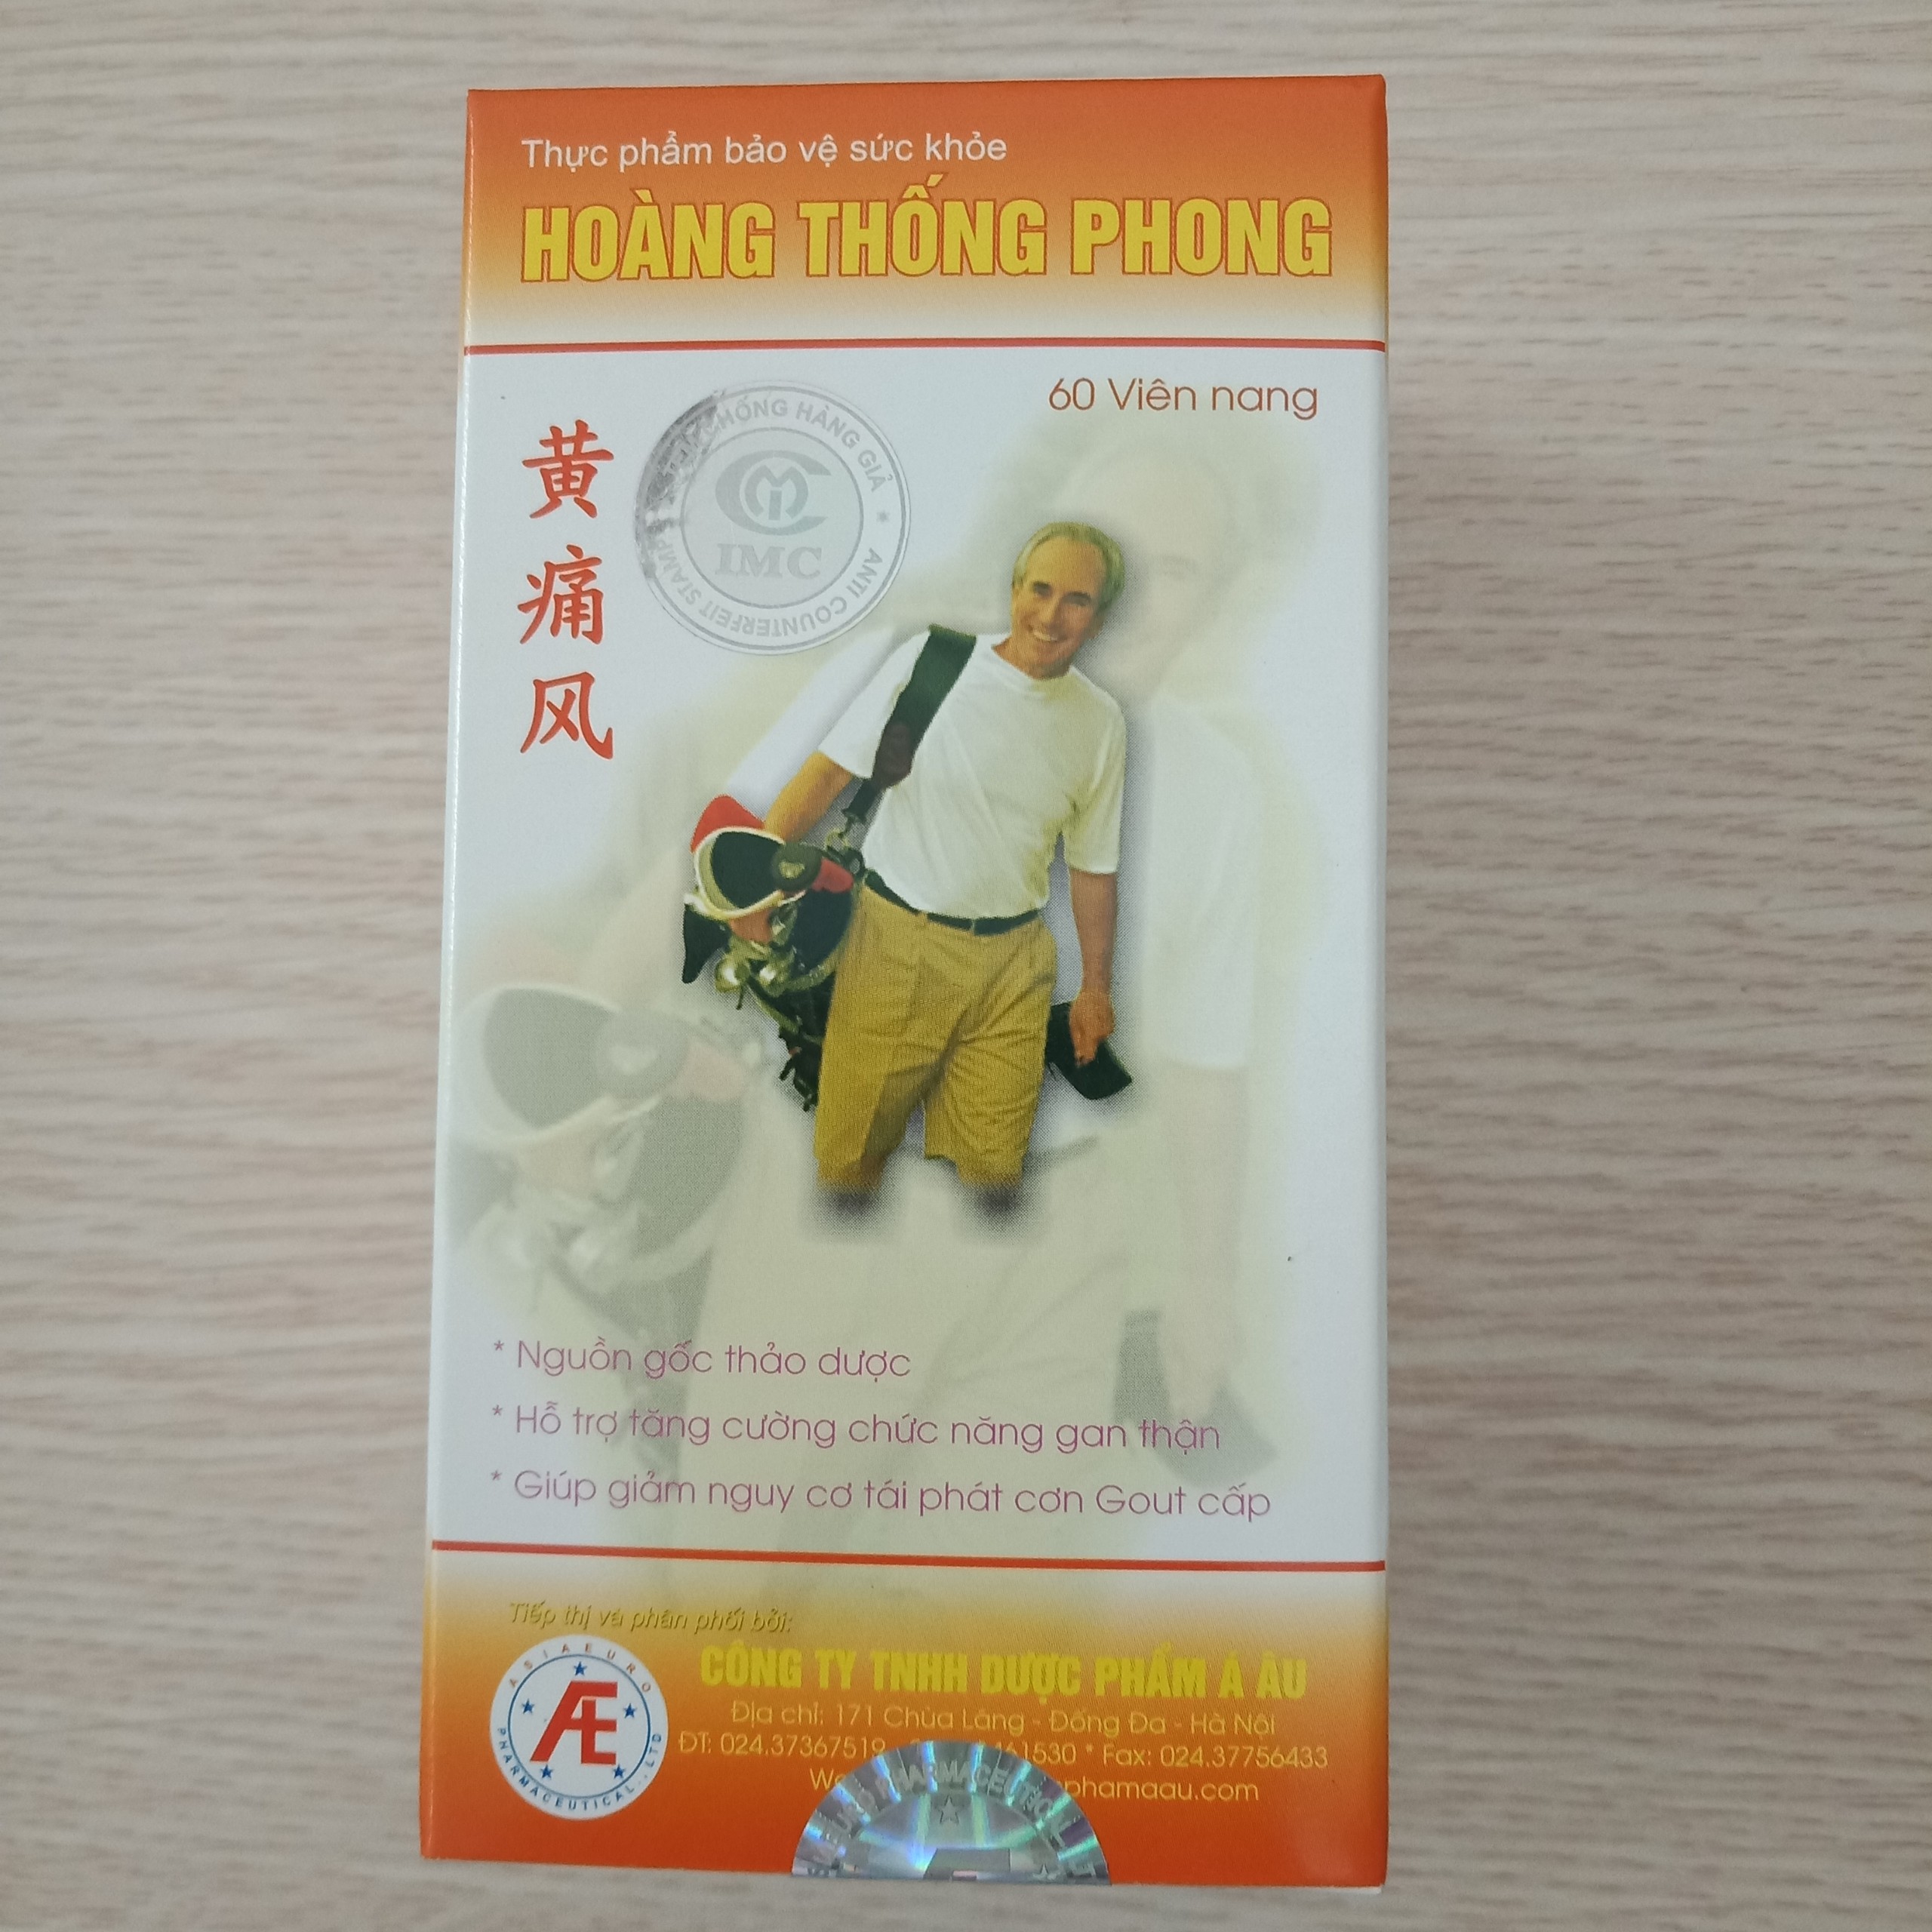 Hoàng Thống Phong - Hỗ trợ làm giảm triệu chứng viêm do gout và giảm nguy